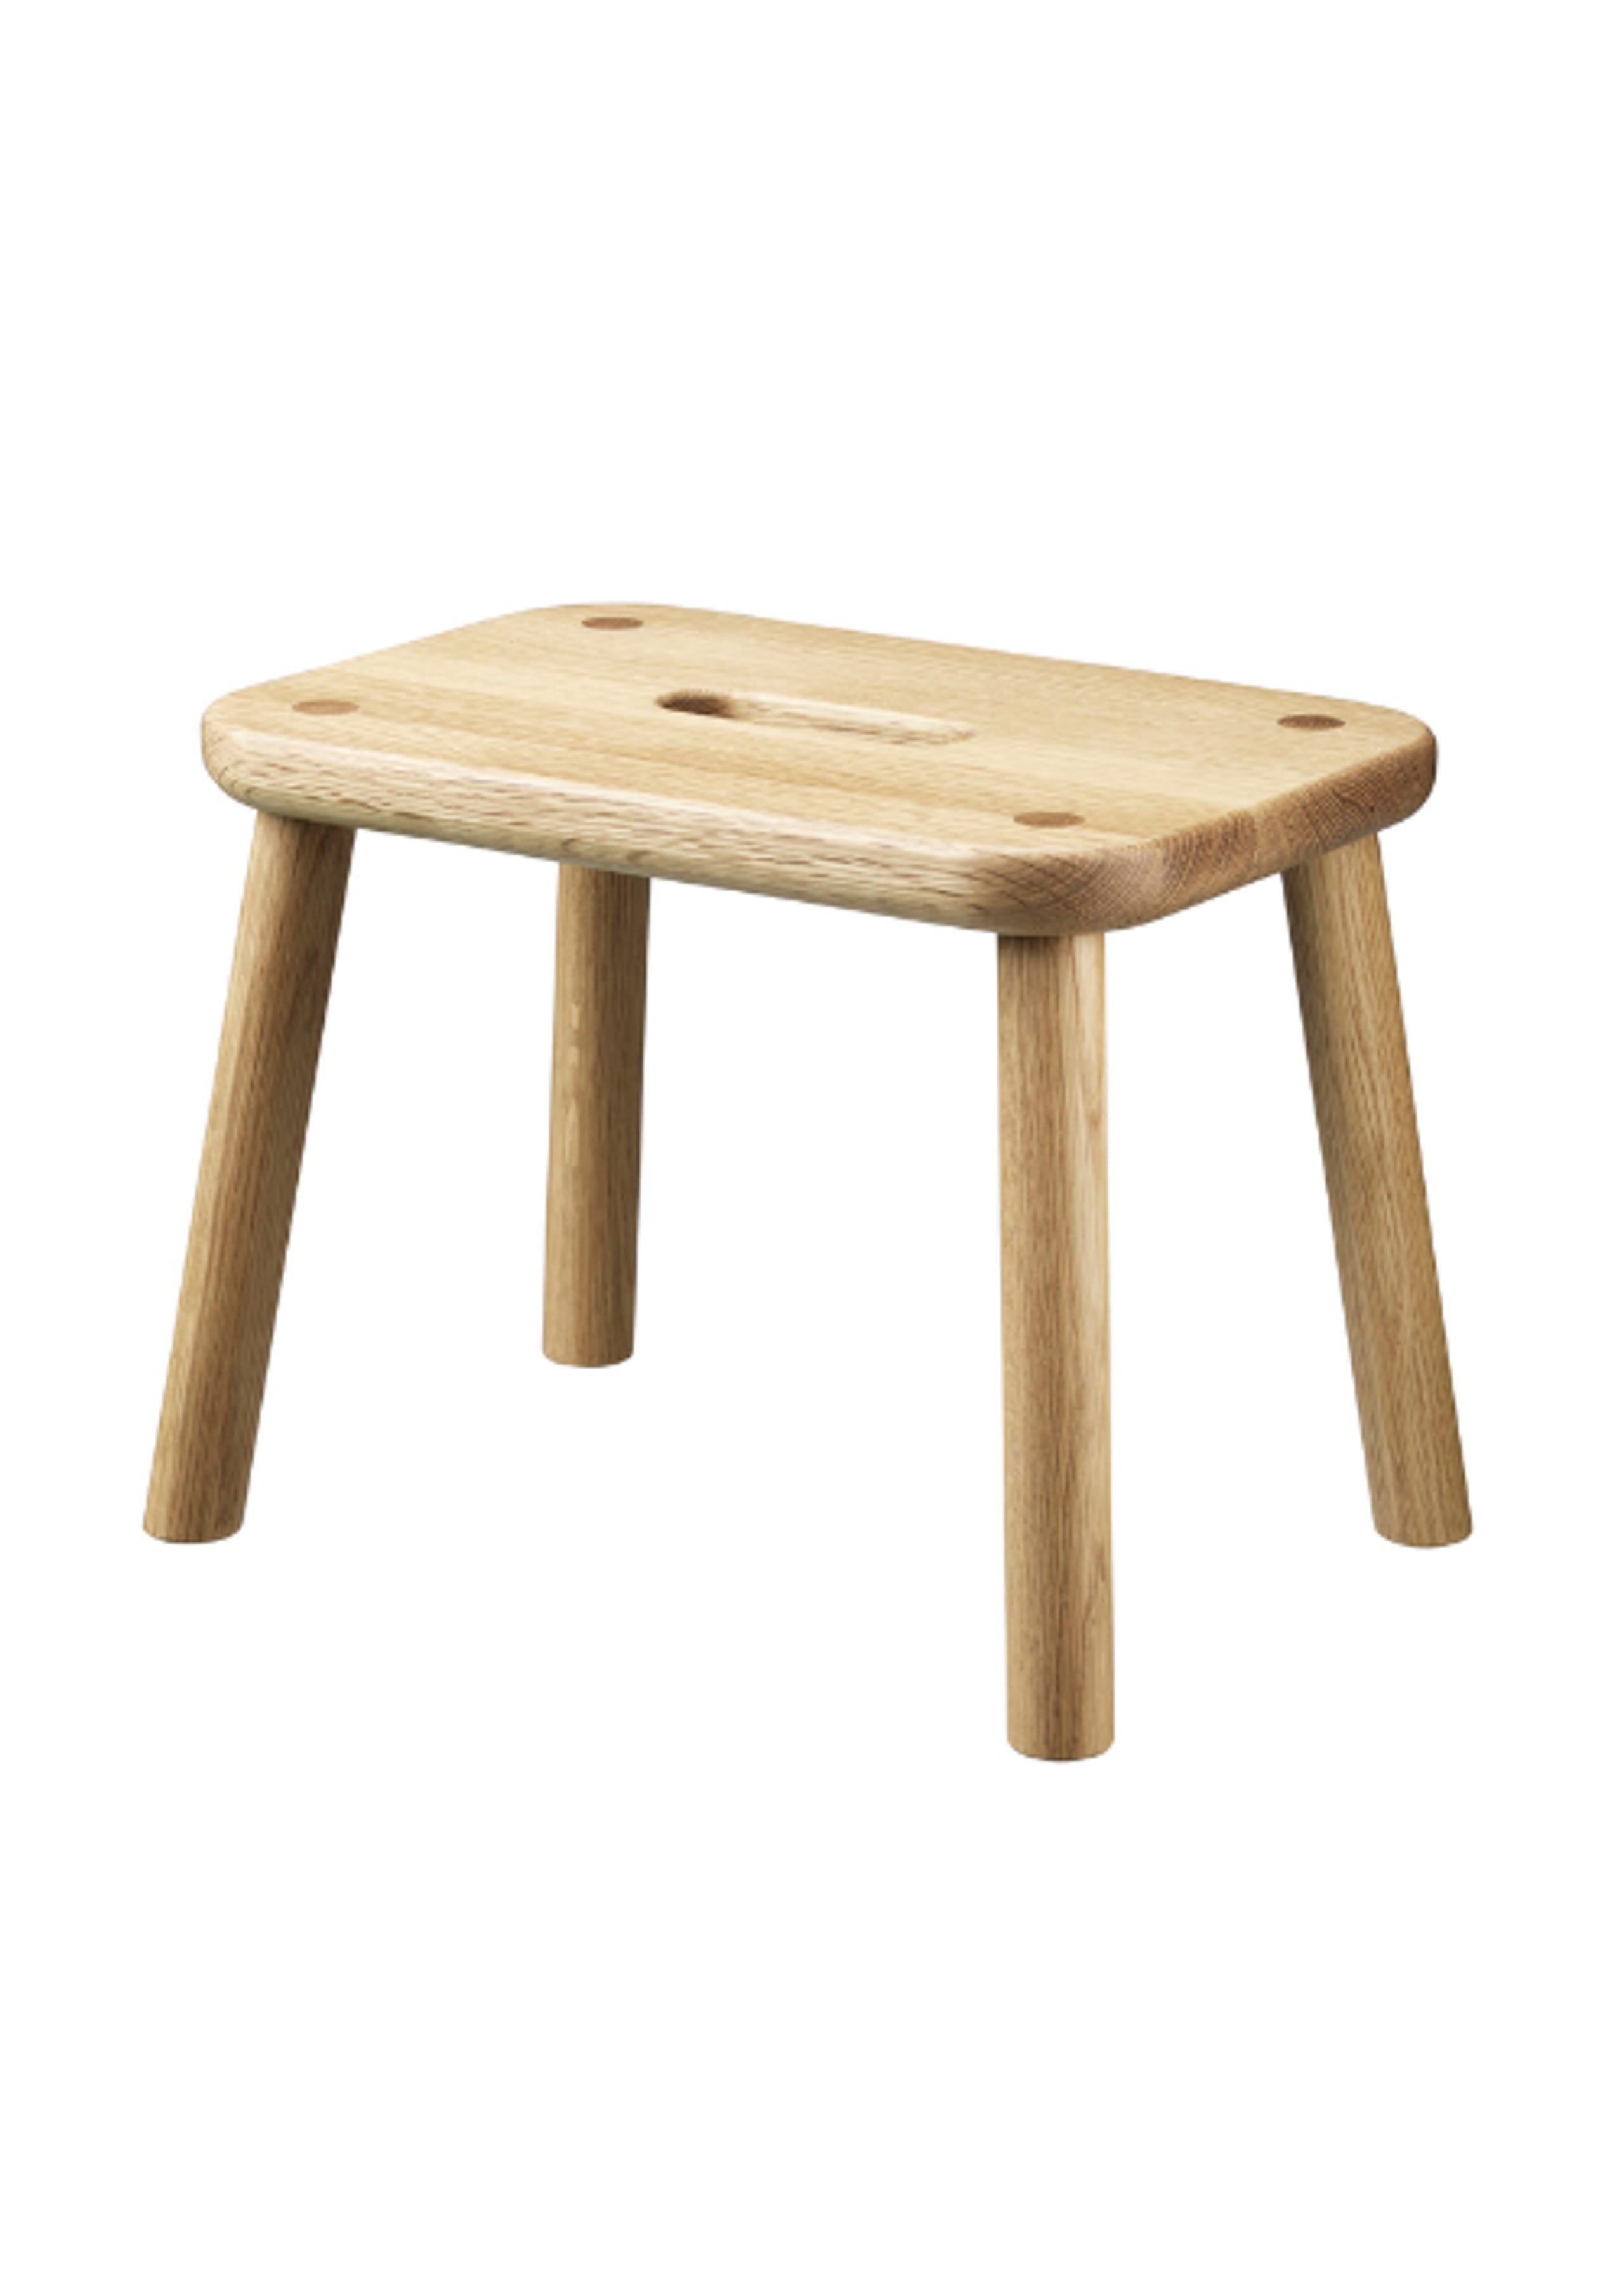 FDB Møbler / Furniture - Stool - J181 - Sønderup - Taburet - Oak